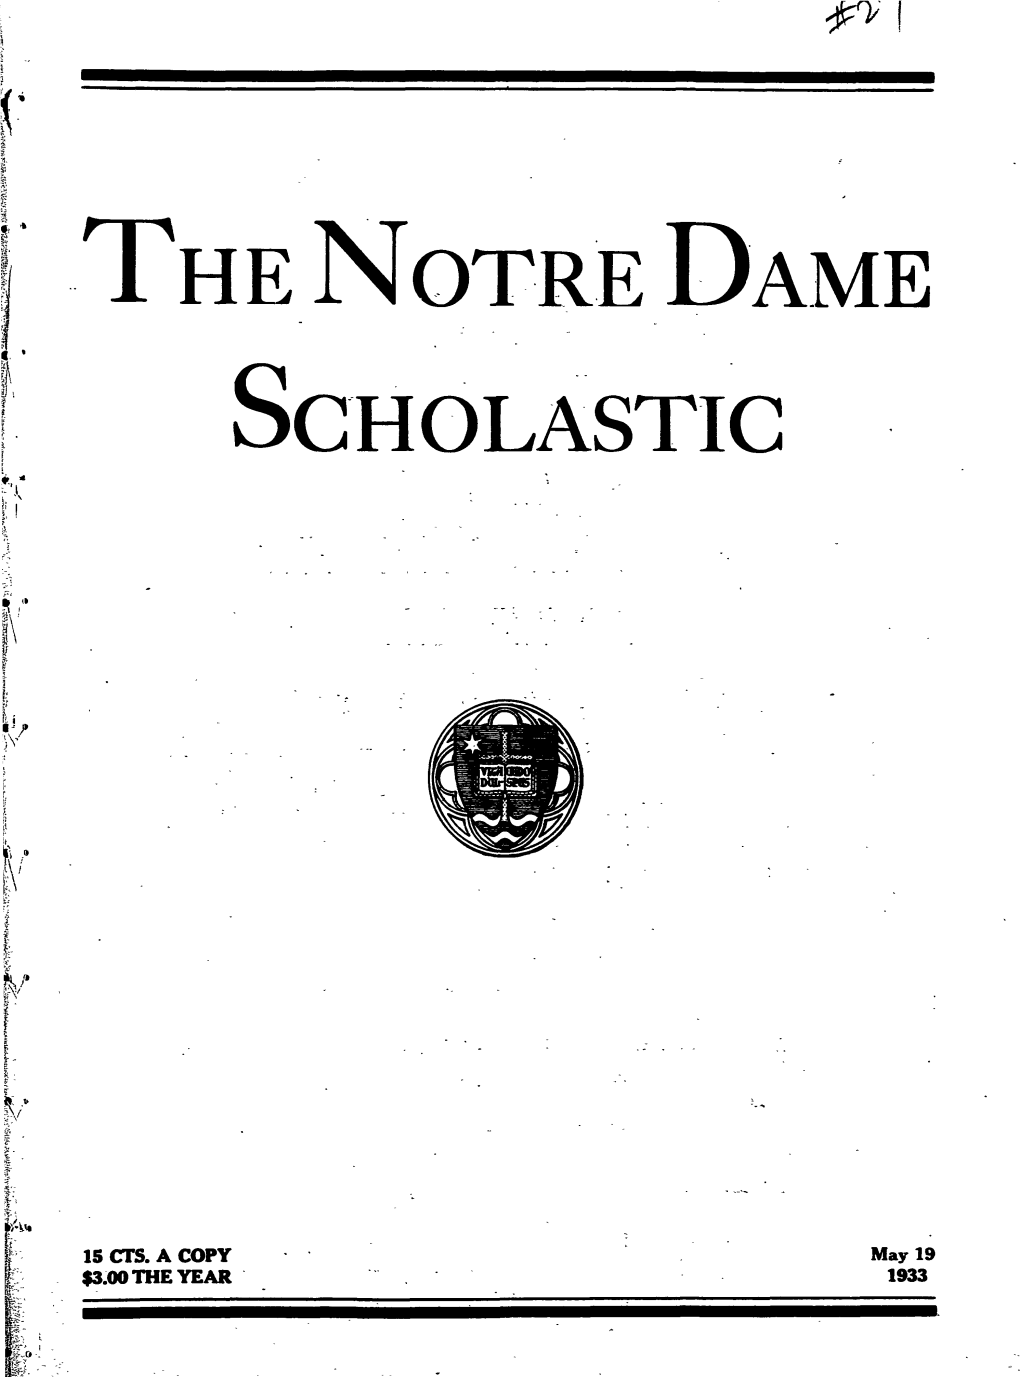 Notre Dame Scholastic, Vol. 66, No. 27